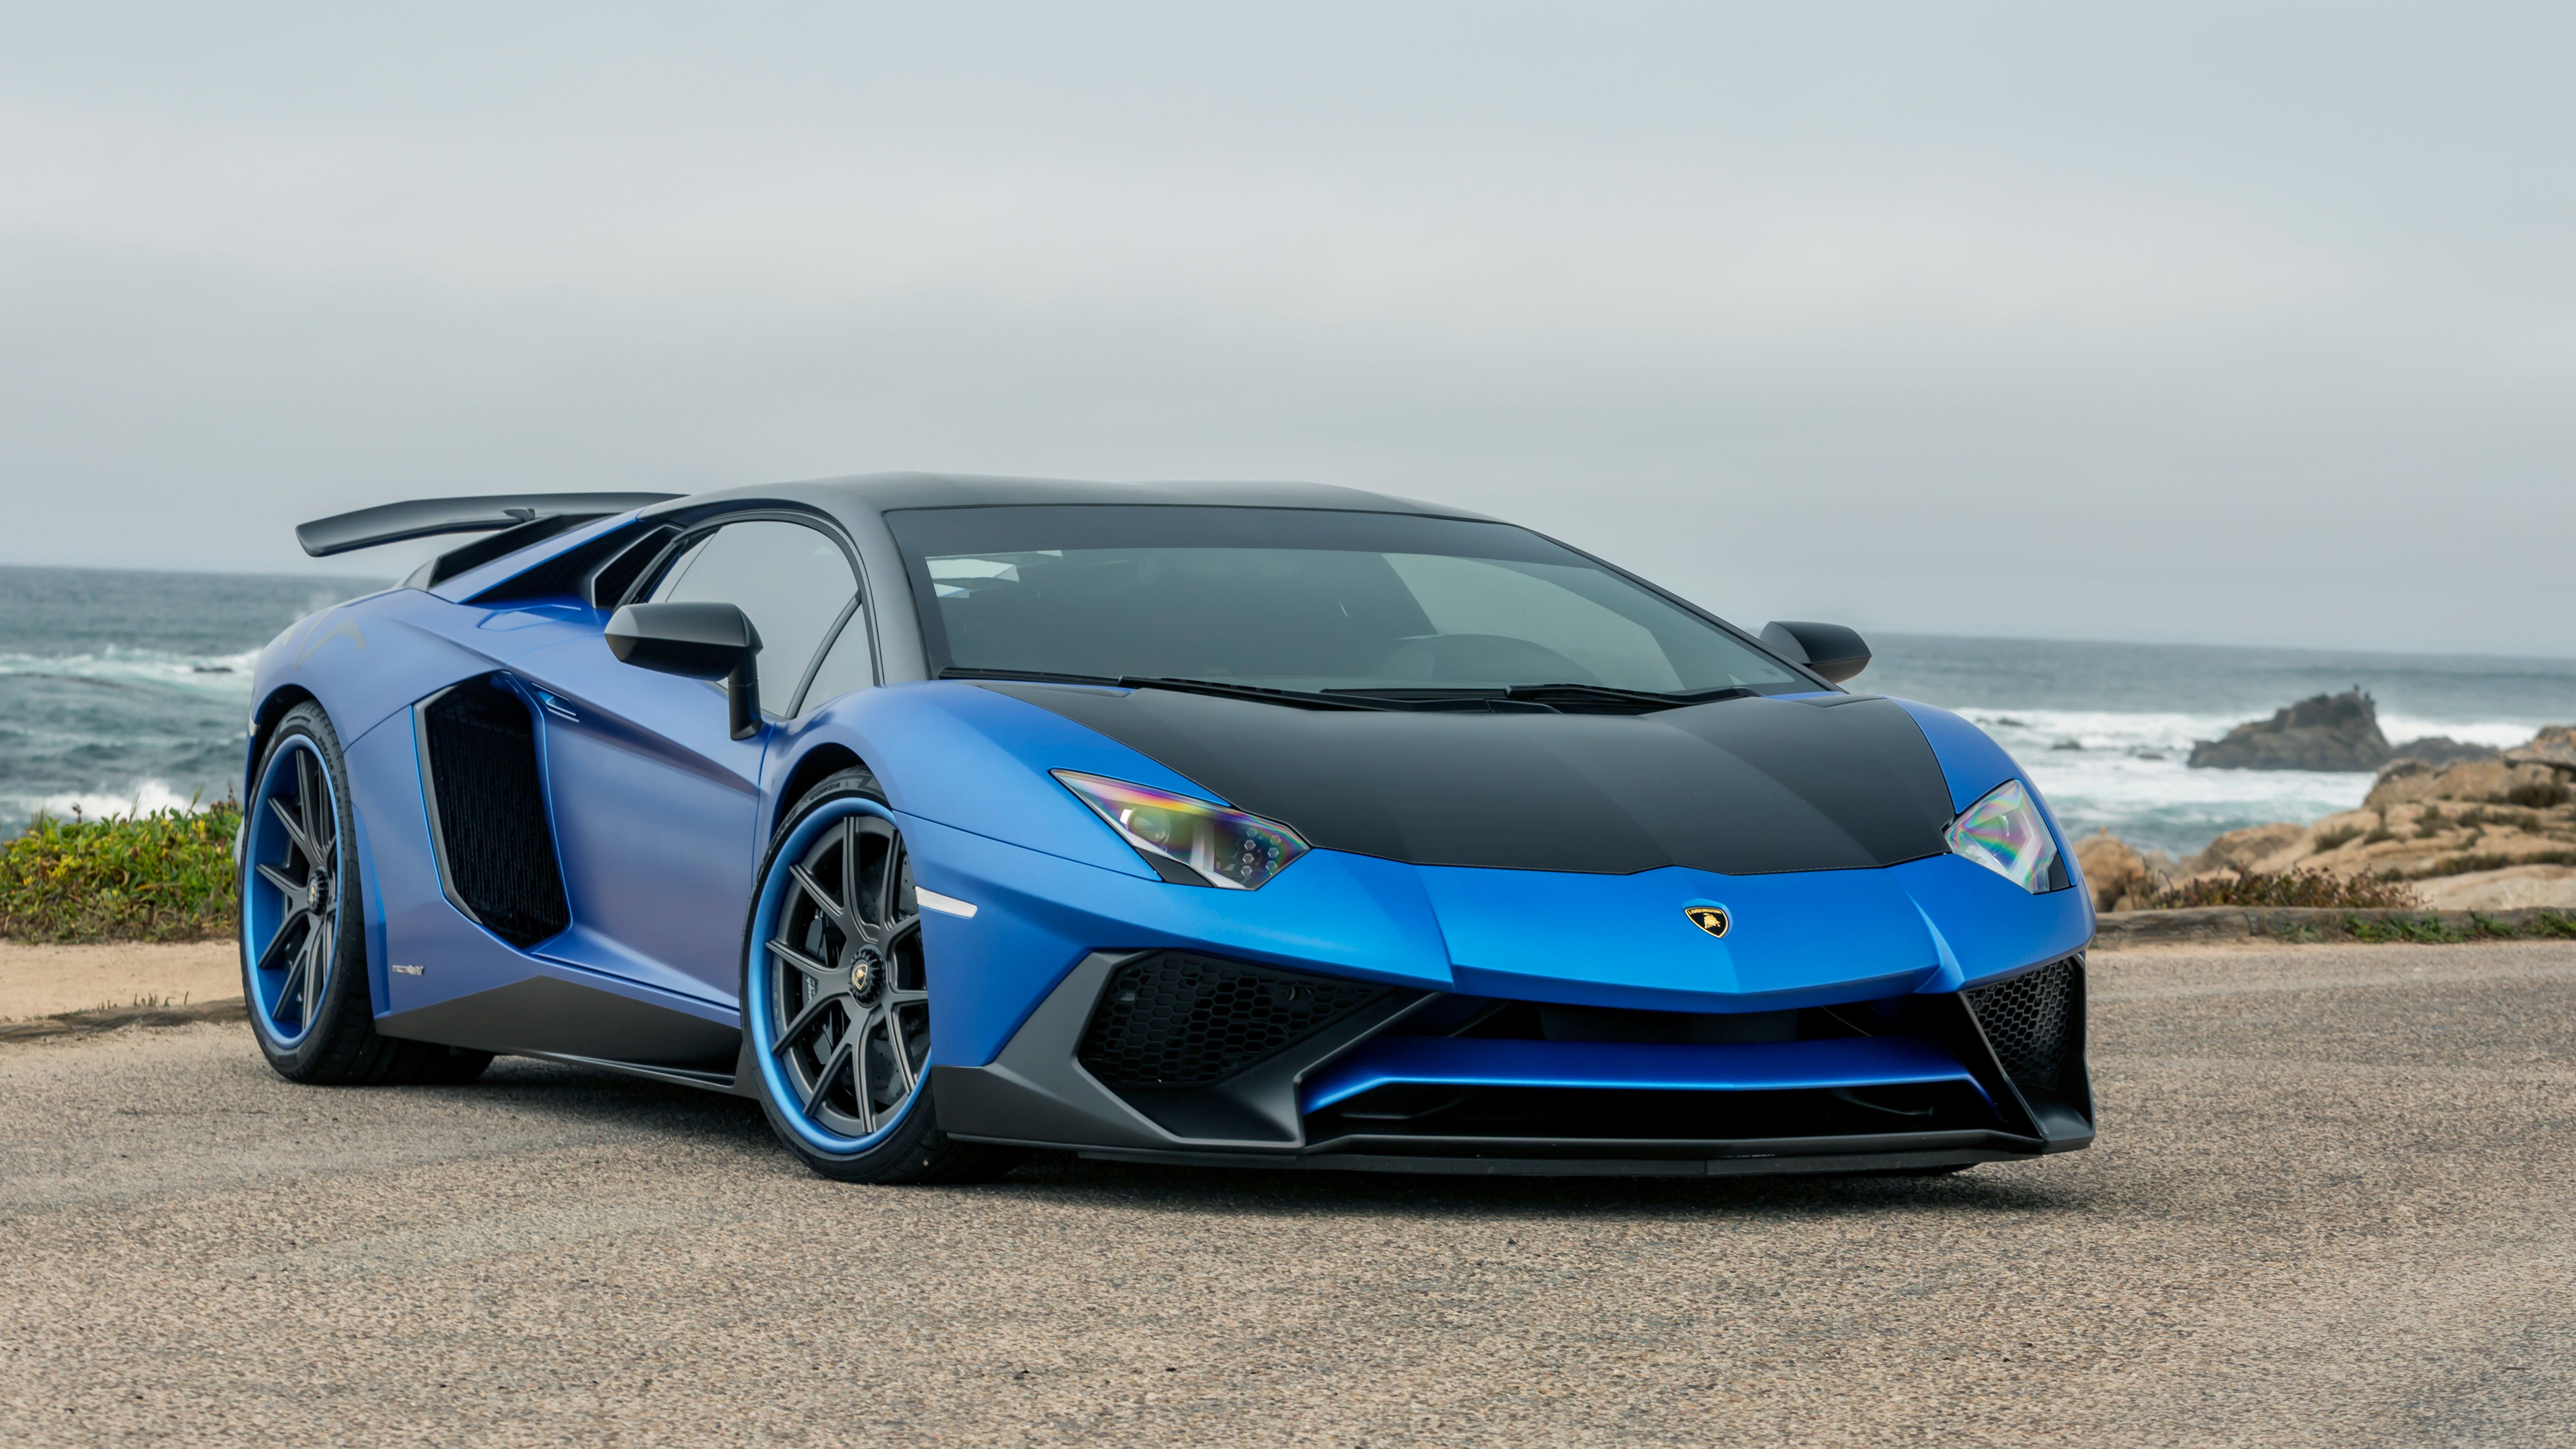 Blue Lamborghini Wallpaper 1080p. Cool whips